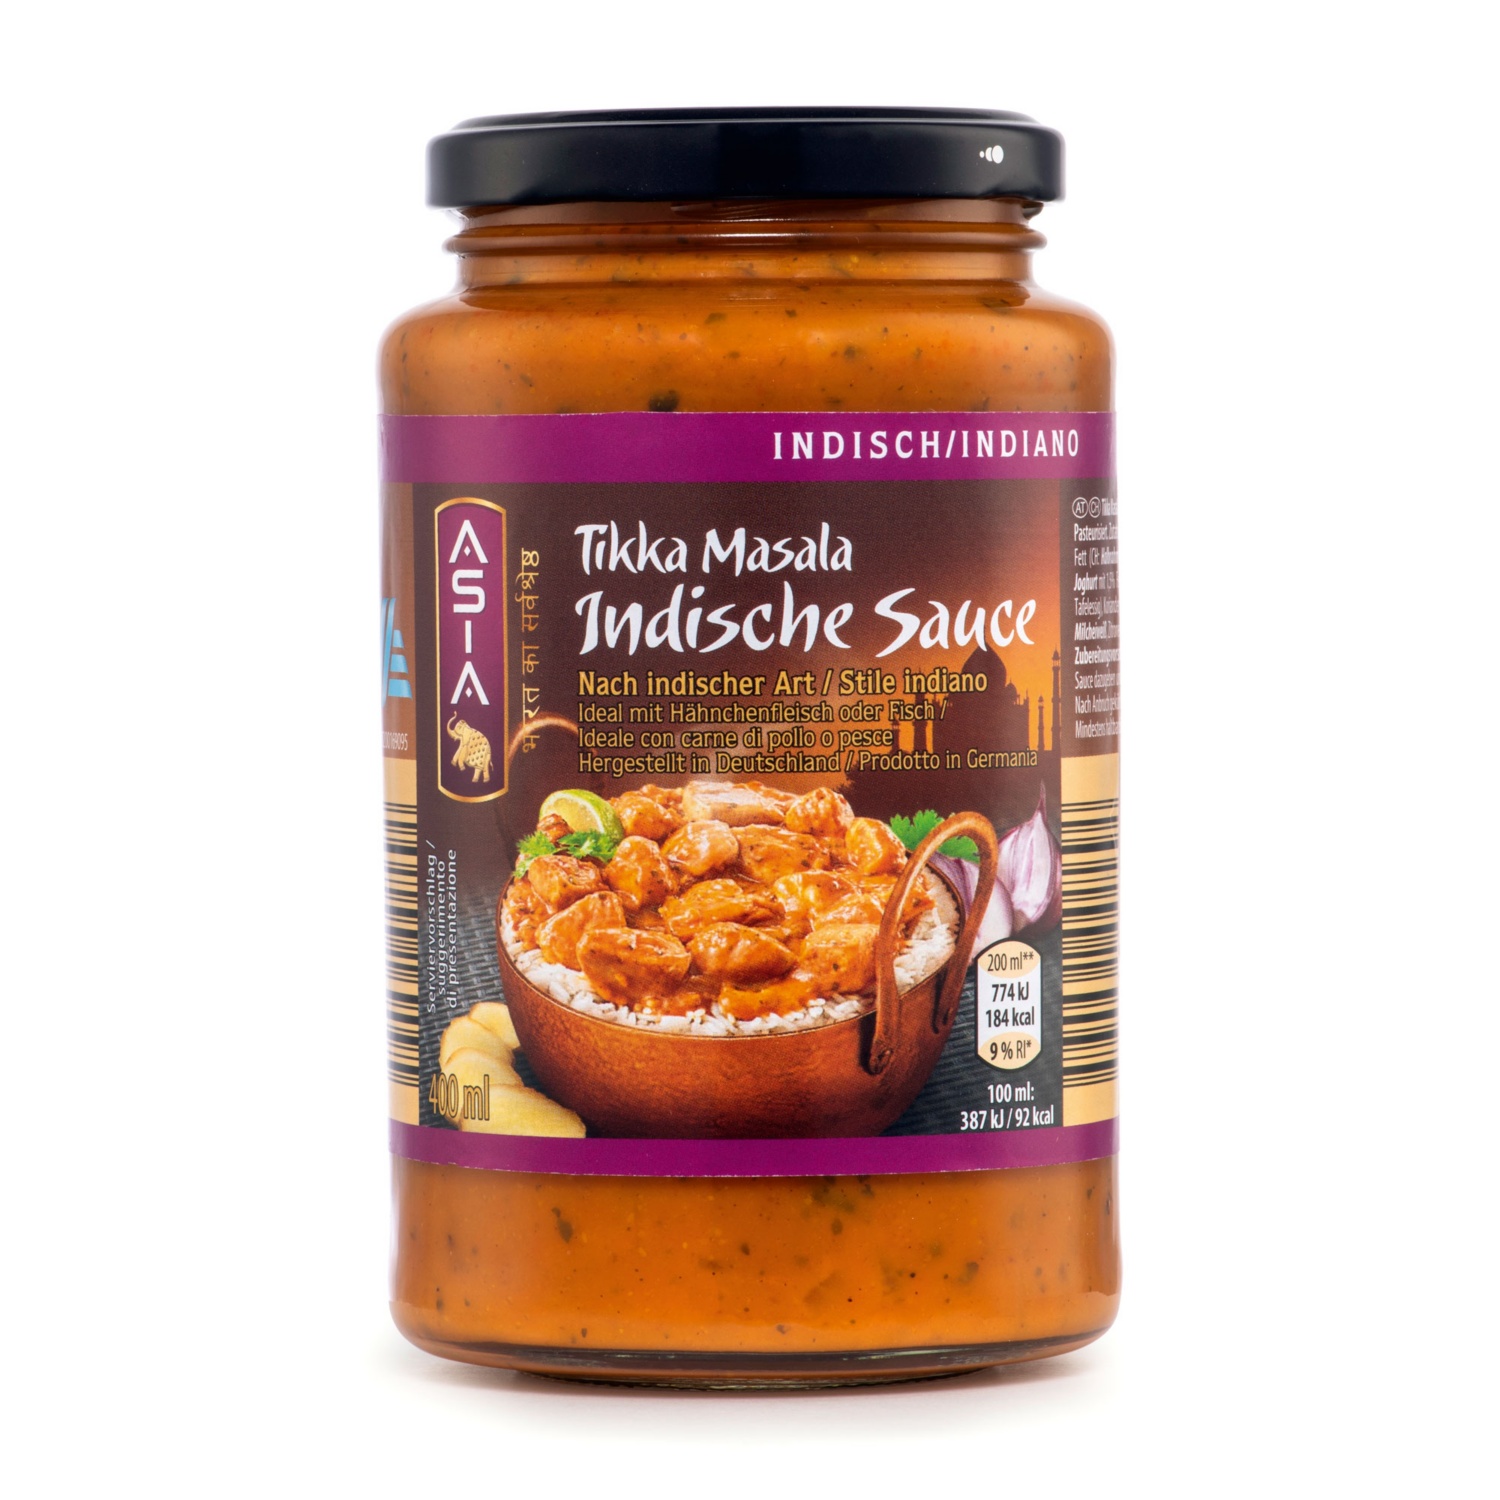 ASIA Indische Sauce, Tikka Masala